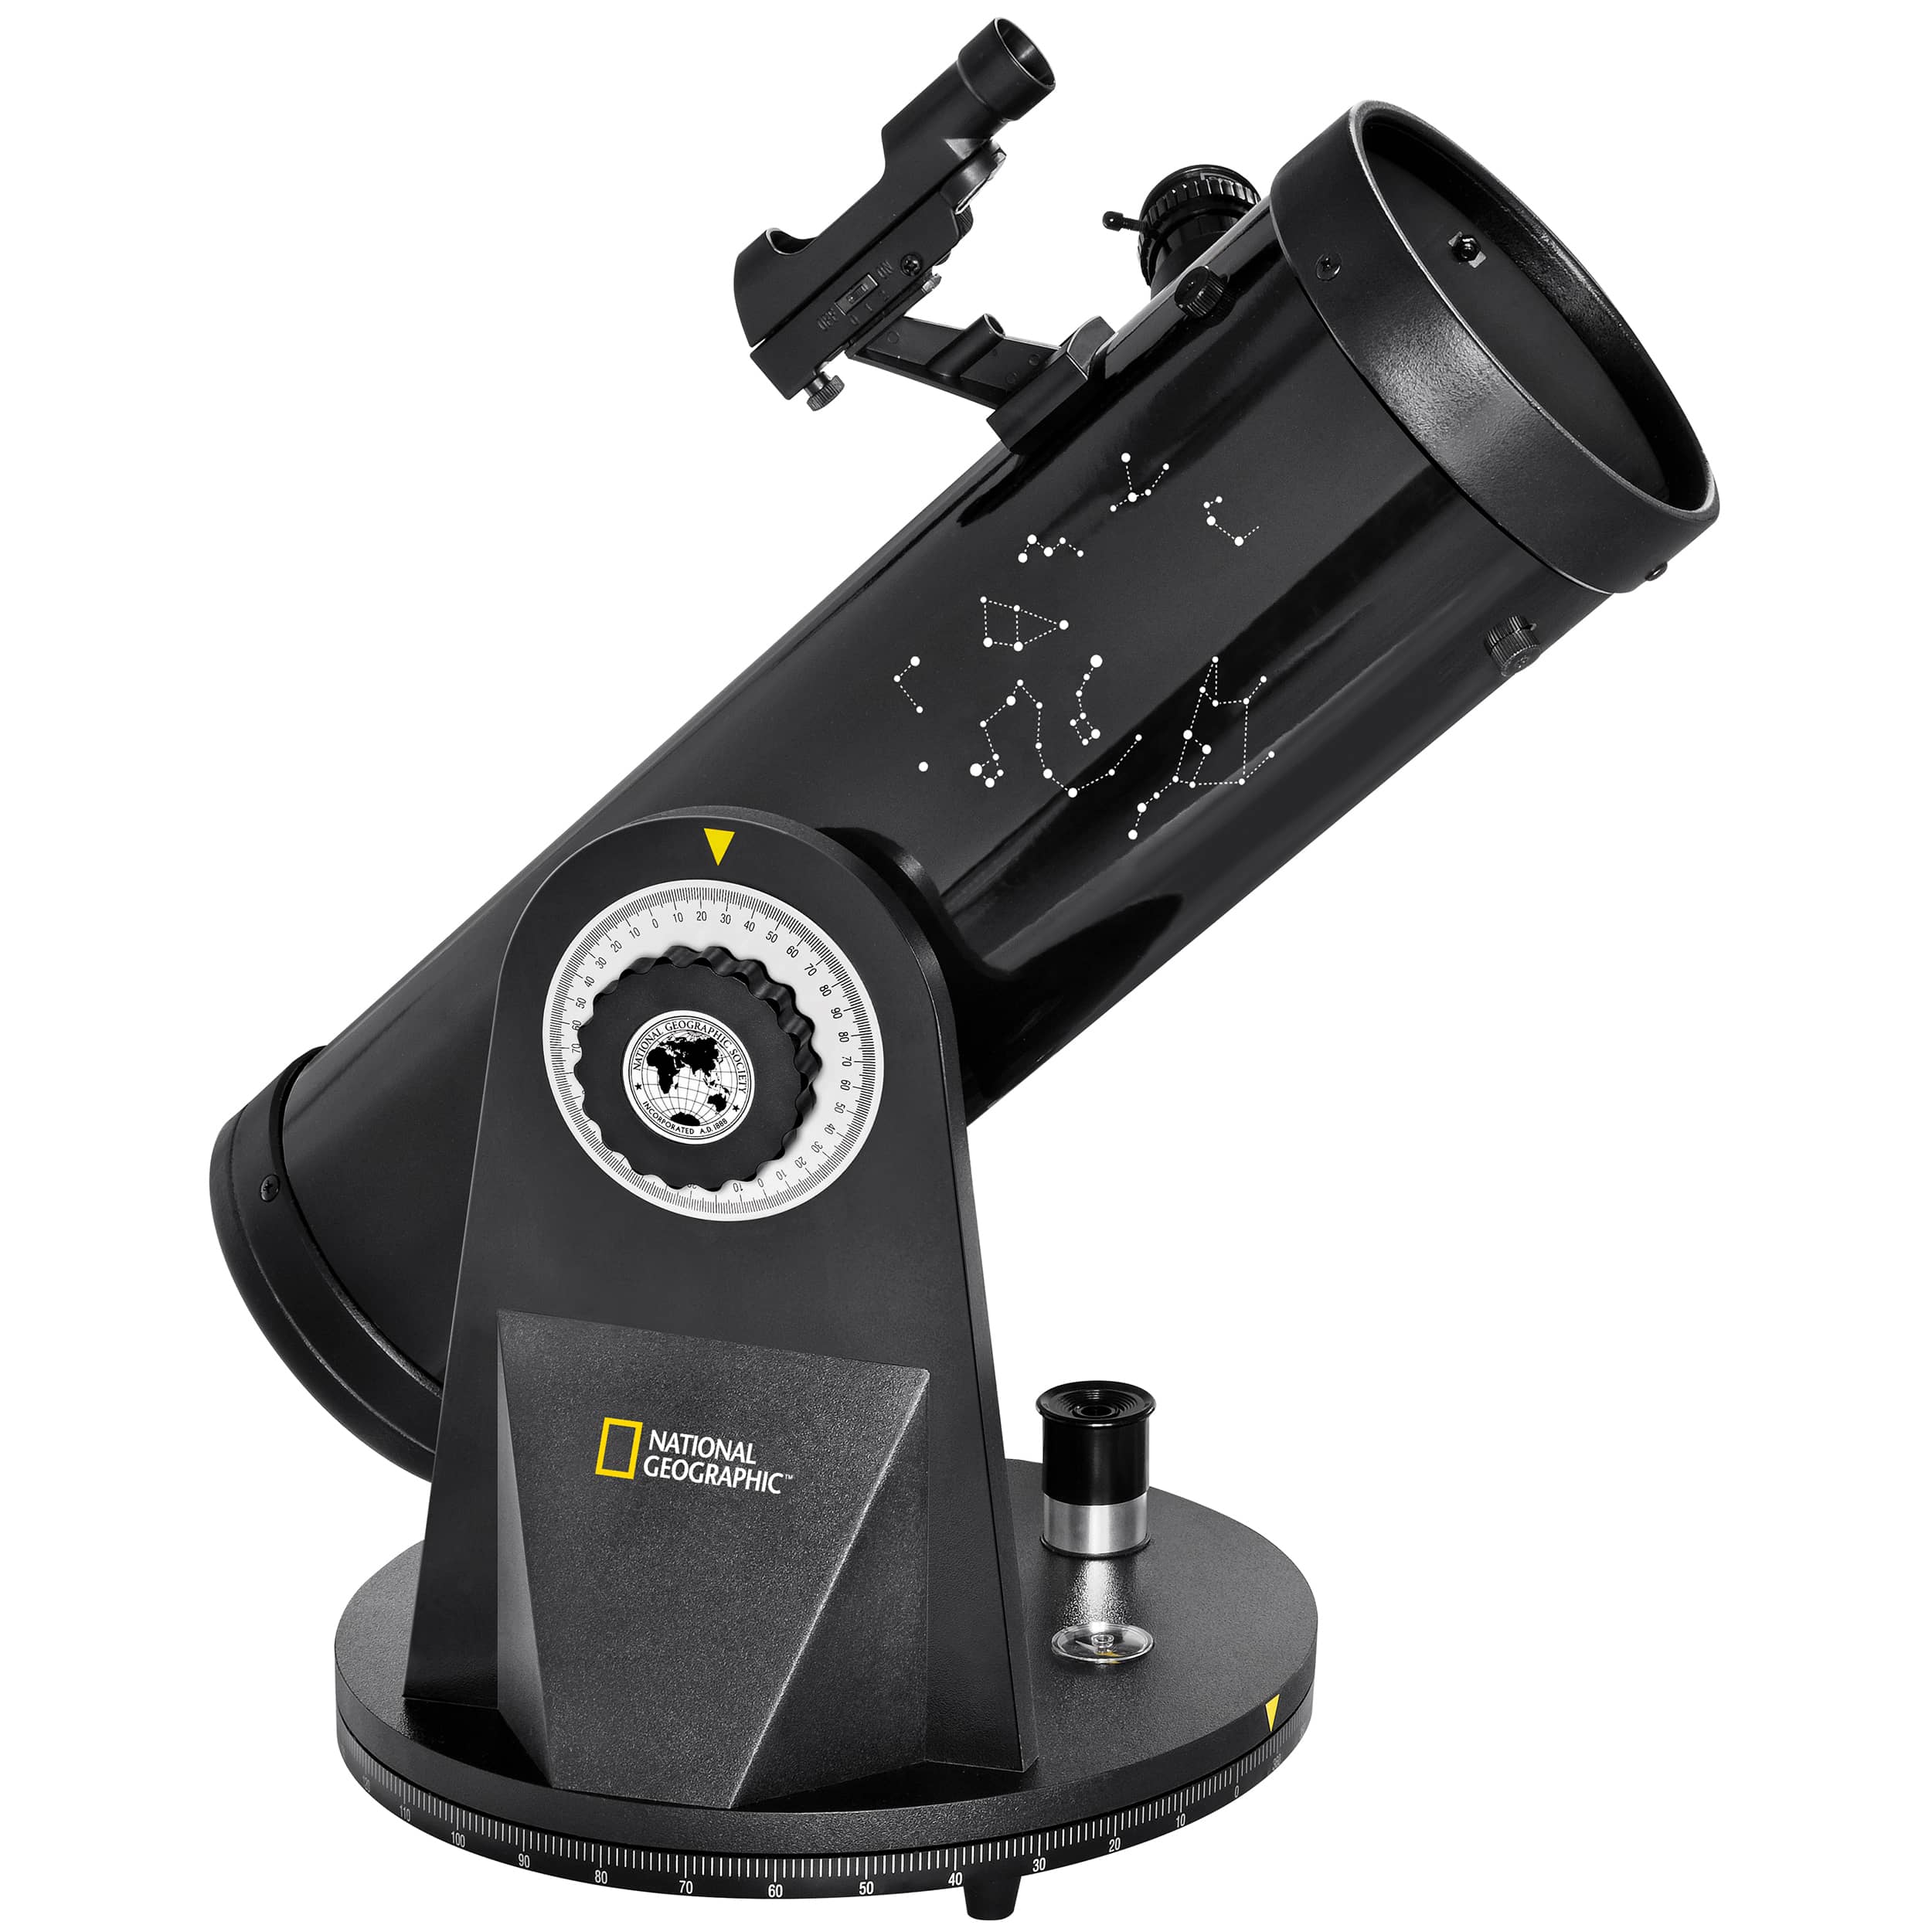  Il telescopio compatto NATIONAL GEOGRAPHIC 114/500 è un telescopio riflettore ideale per i principianti, con accessori completi e tante possibilità di fare osservazioni 